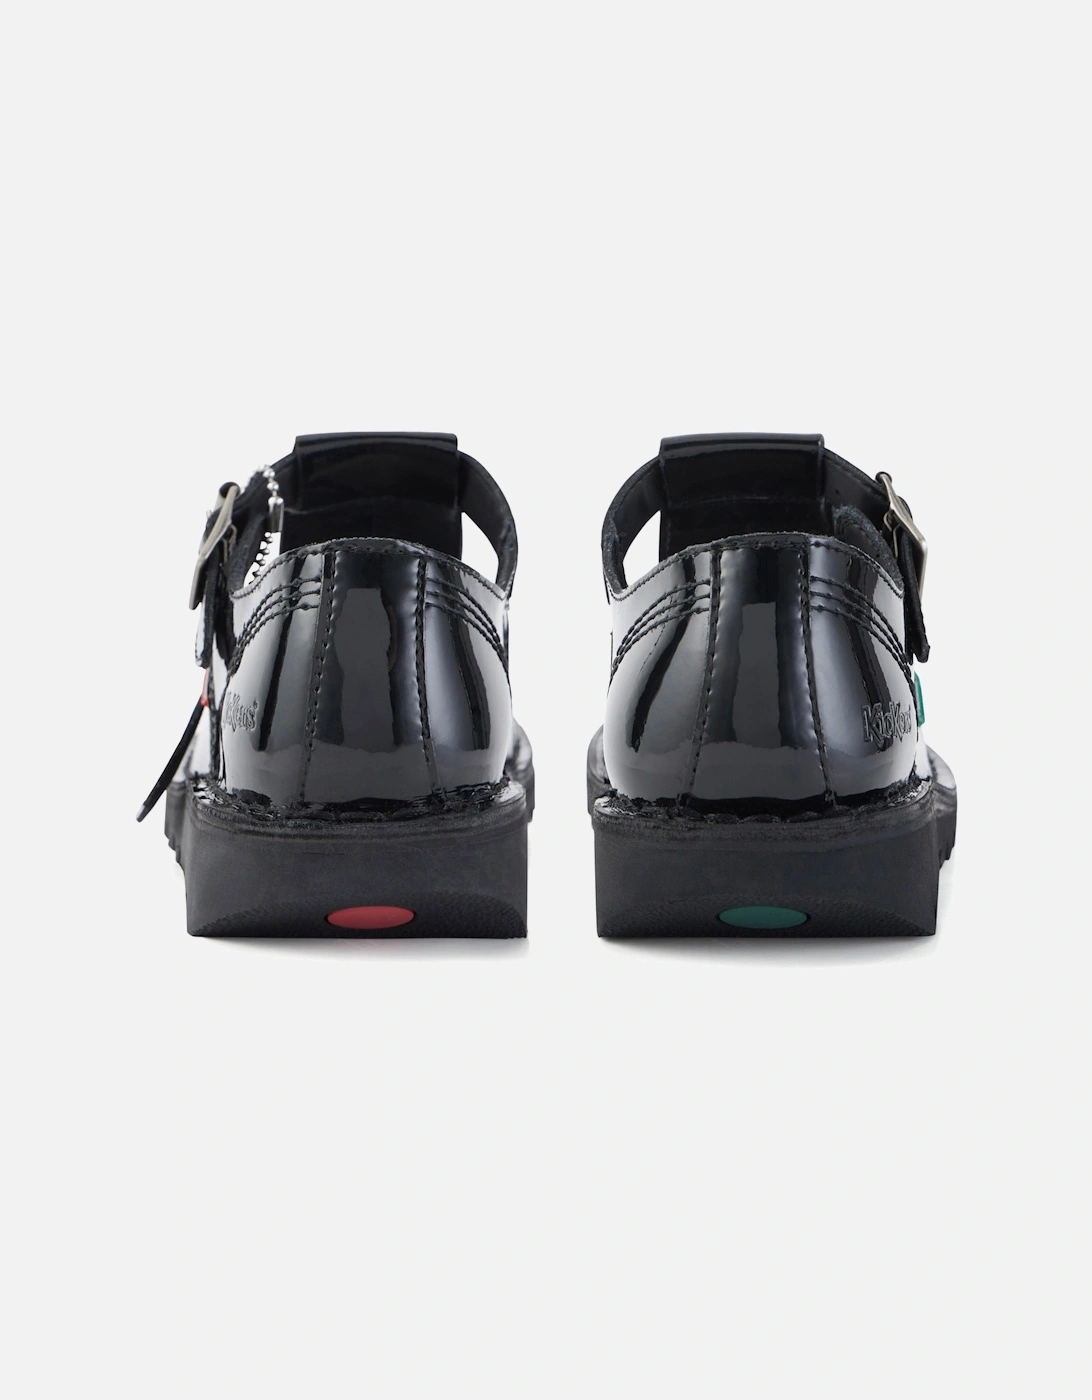 Womens Aztec Patent Sandals (Black)